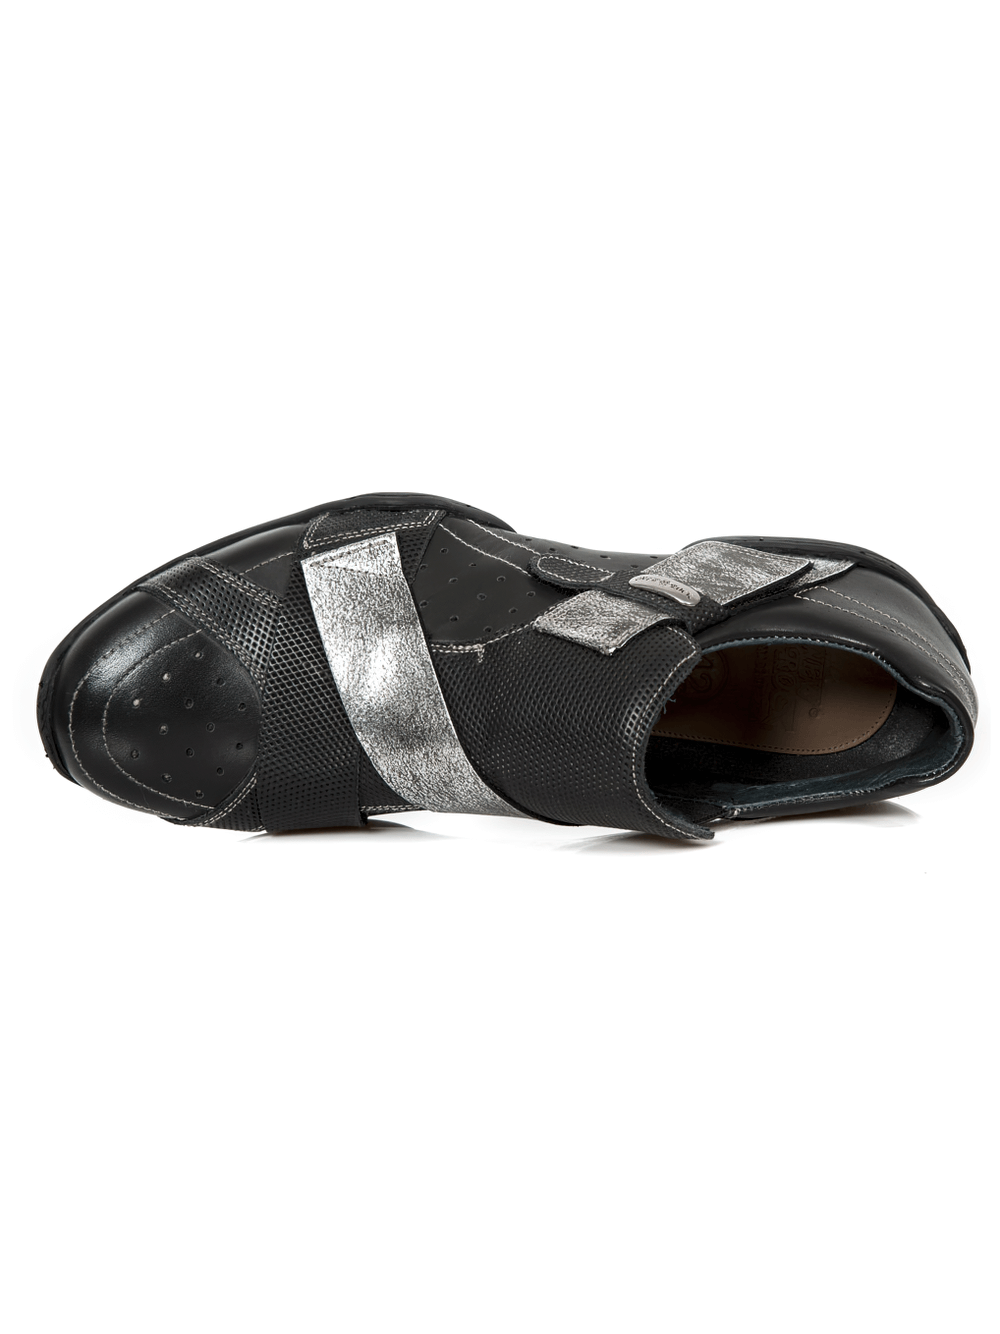 NEW ROCK Zapatos Rock negros con tira de velcro plateada de hombre